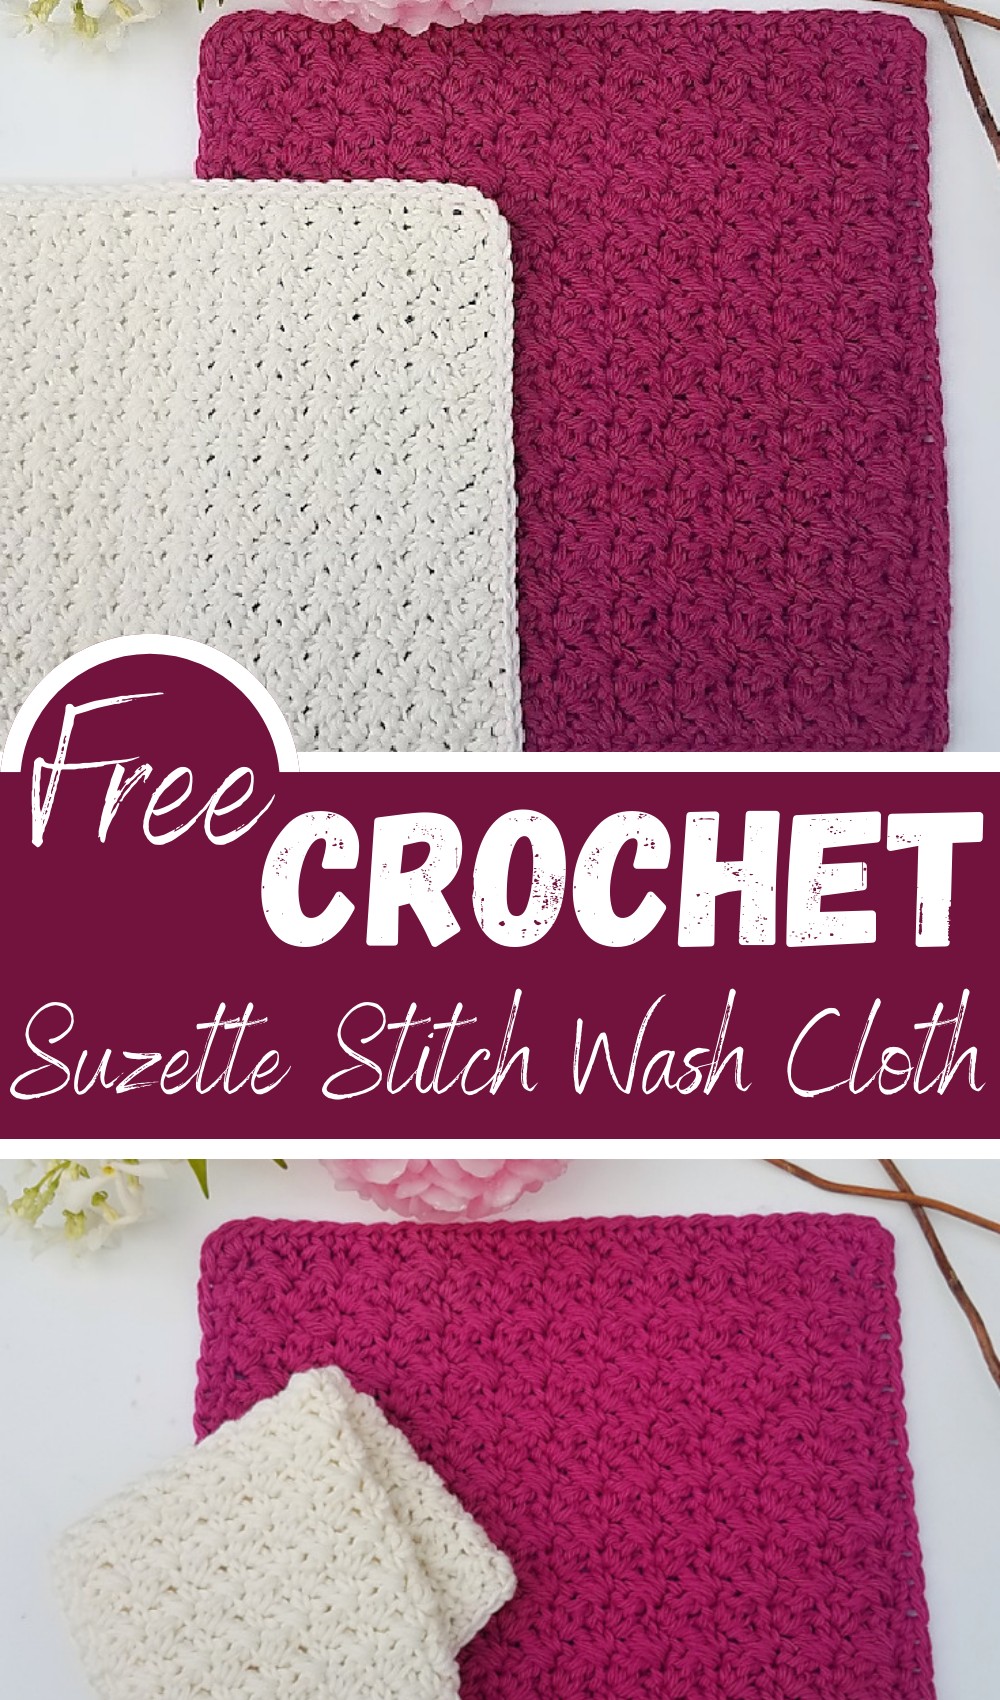 Suzette Stitch Wash Cloth